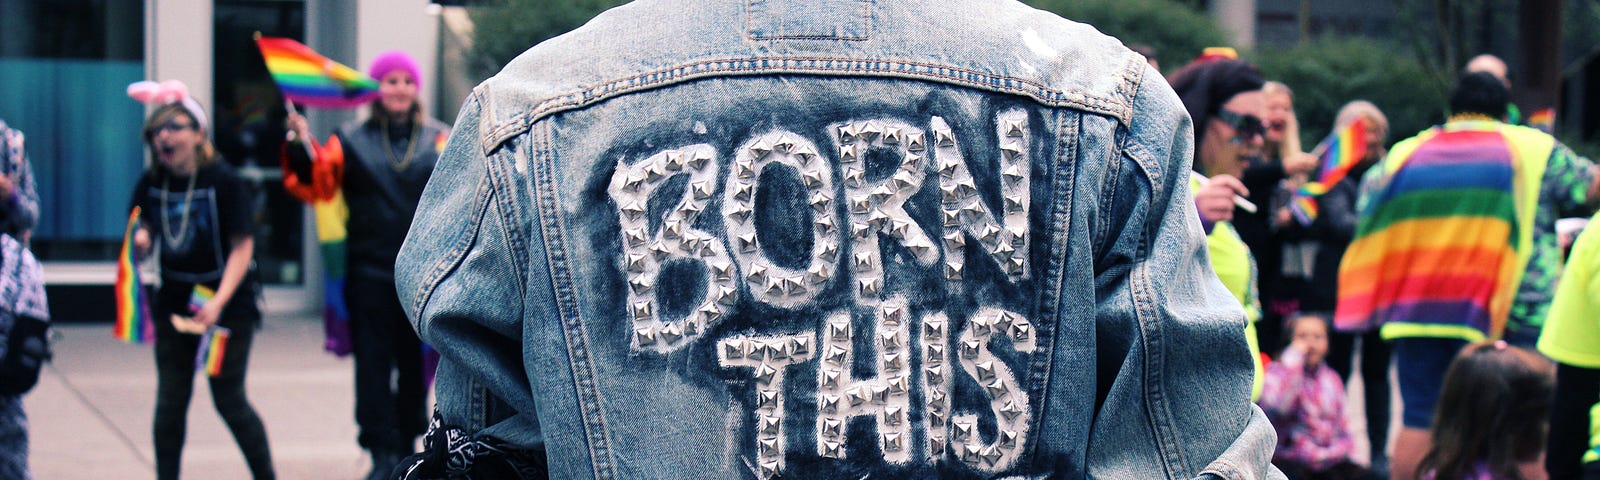 Man at a Pride parade wearing a denim jacket that says “Born This Way”